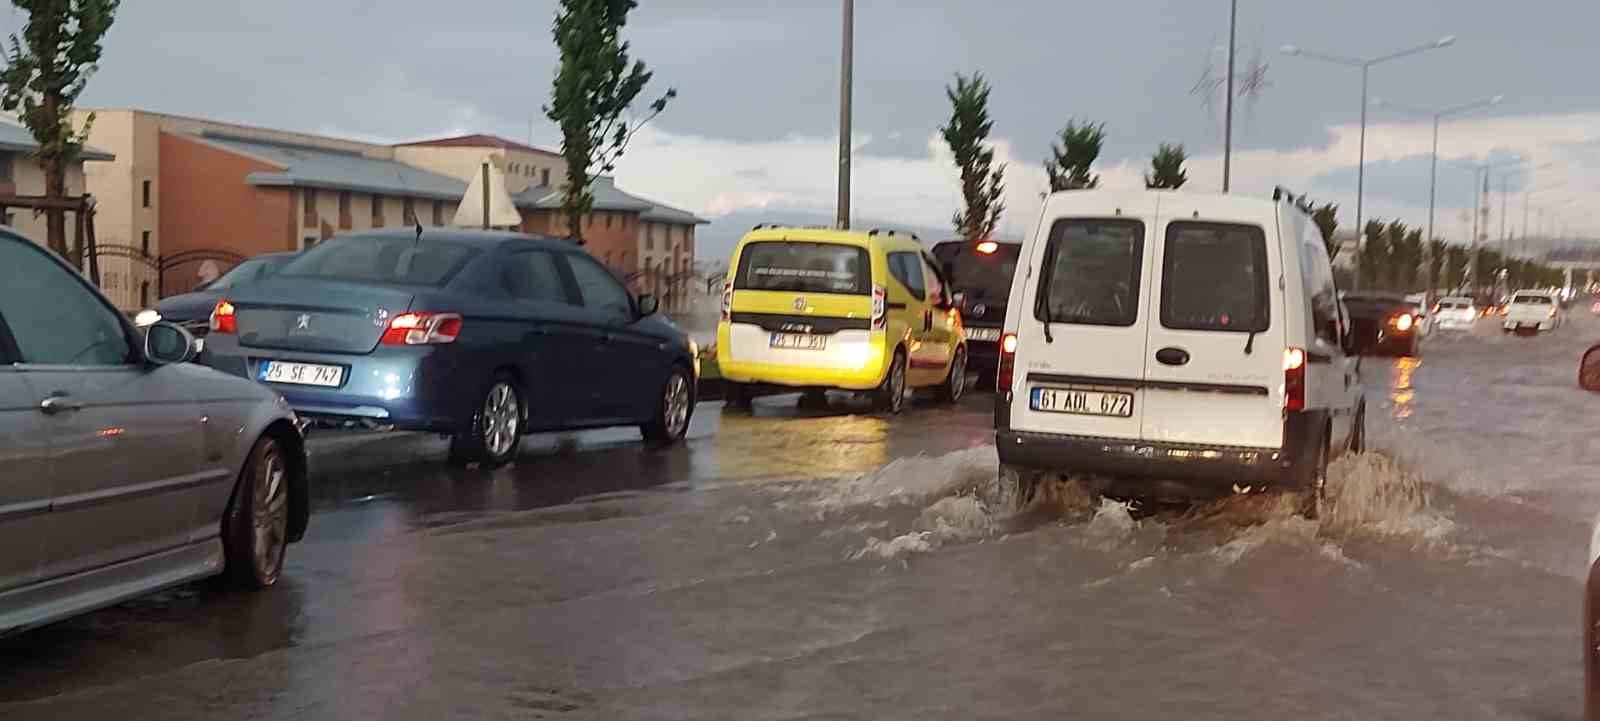 Erzurum’da sağanak yağış hayatı felç etti
